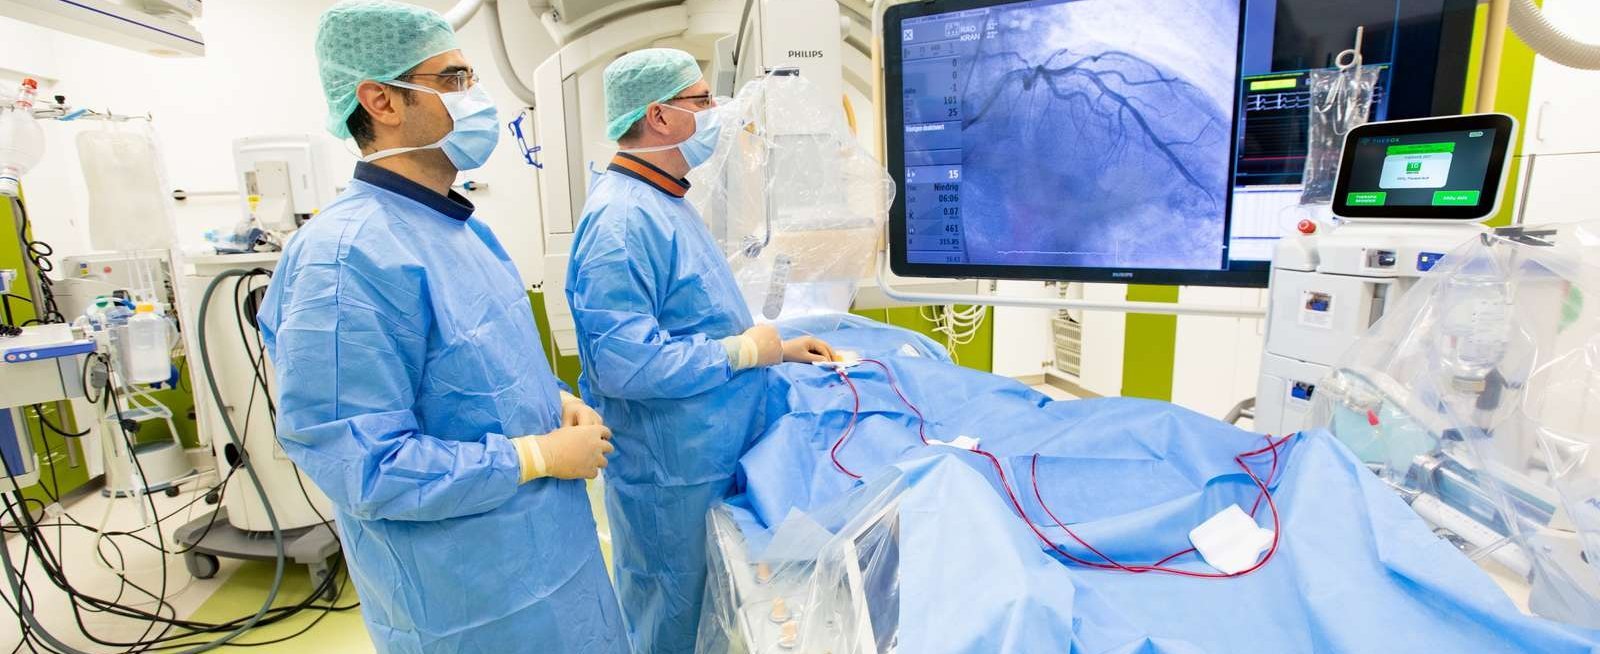 Zwei Männer in OP-Schutzkleidung stehen in einem OP am Operationstisch, auf dem ein Patient mit blauem Laken zugedeckt liegt, und betrachten den Monitor über dem OP-Tisch. 